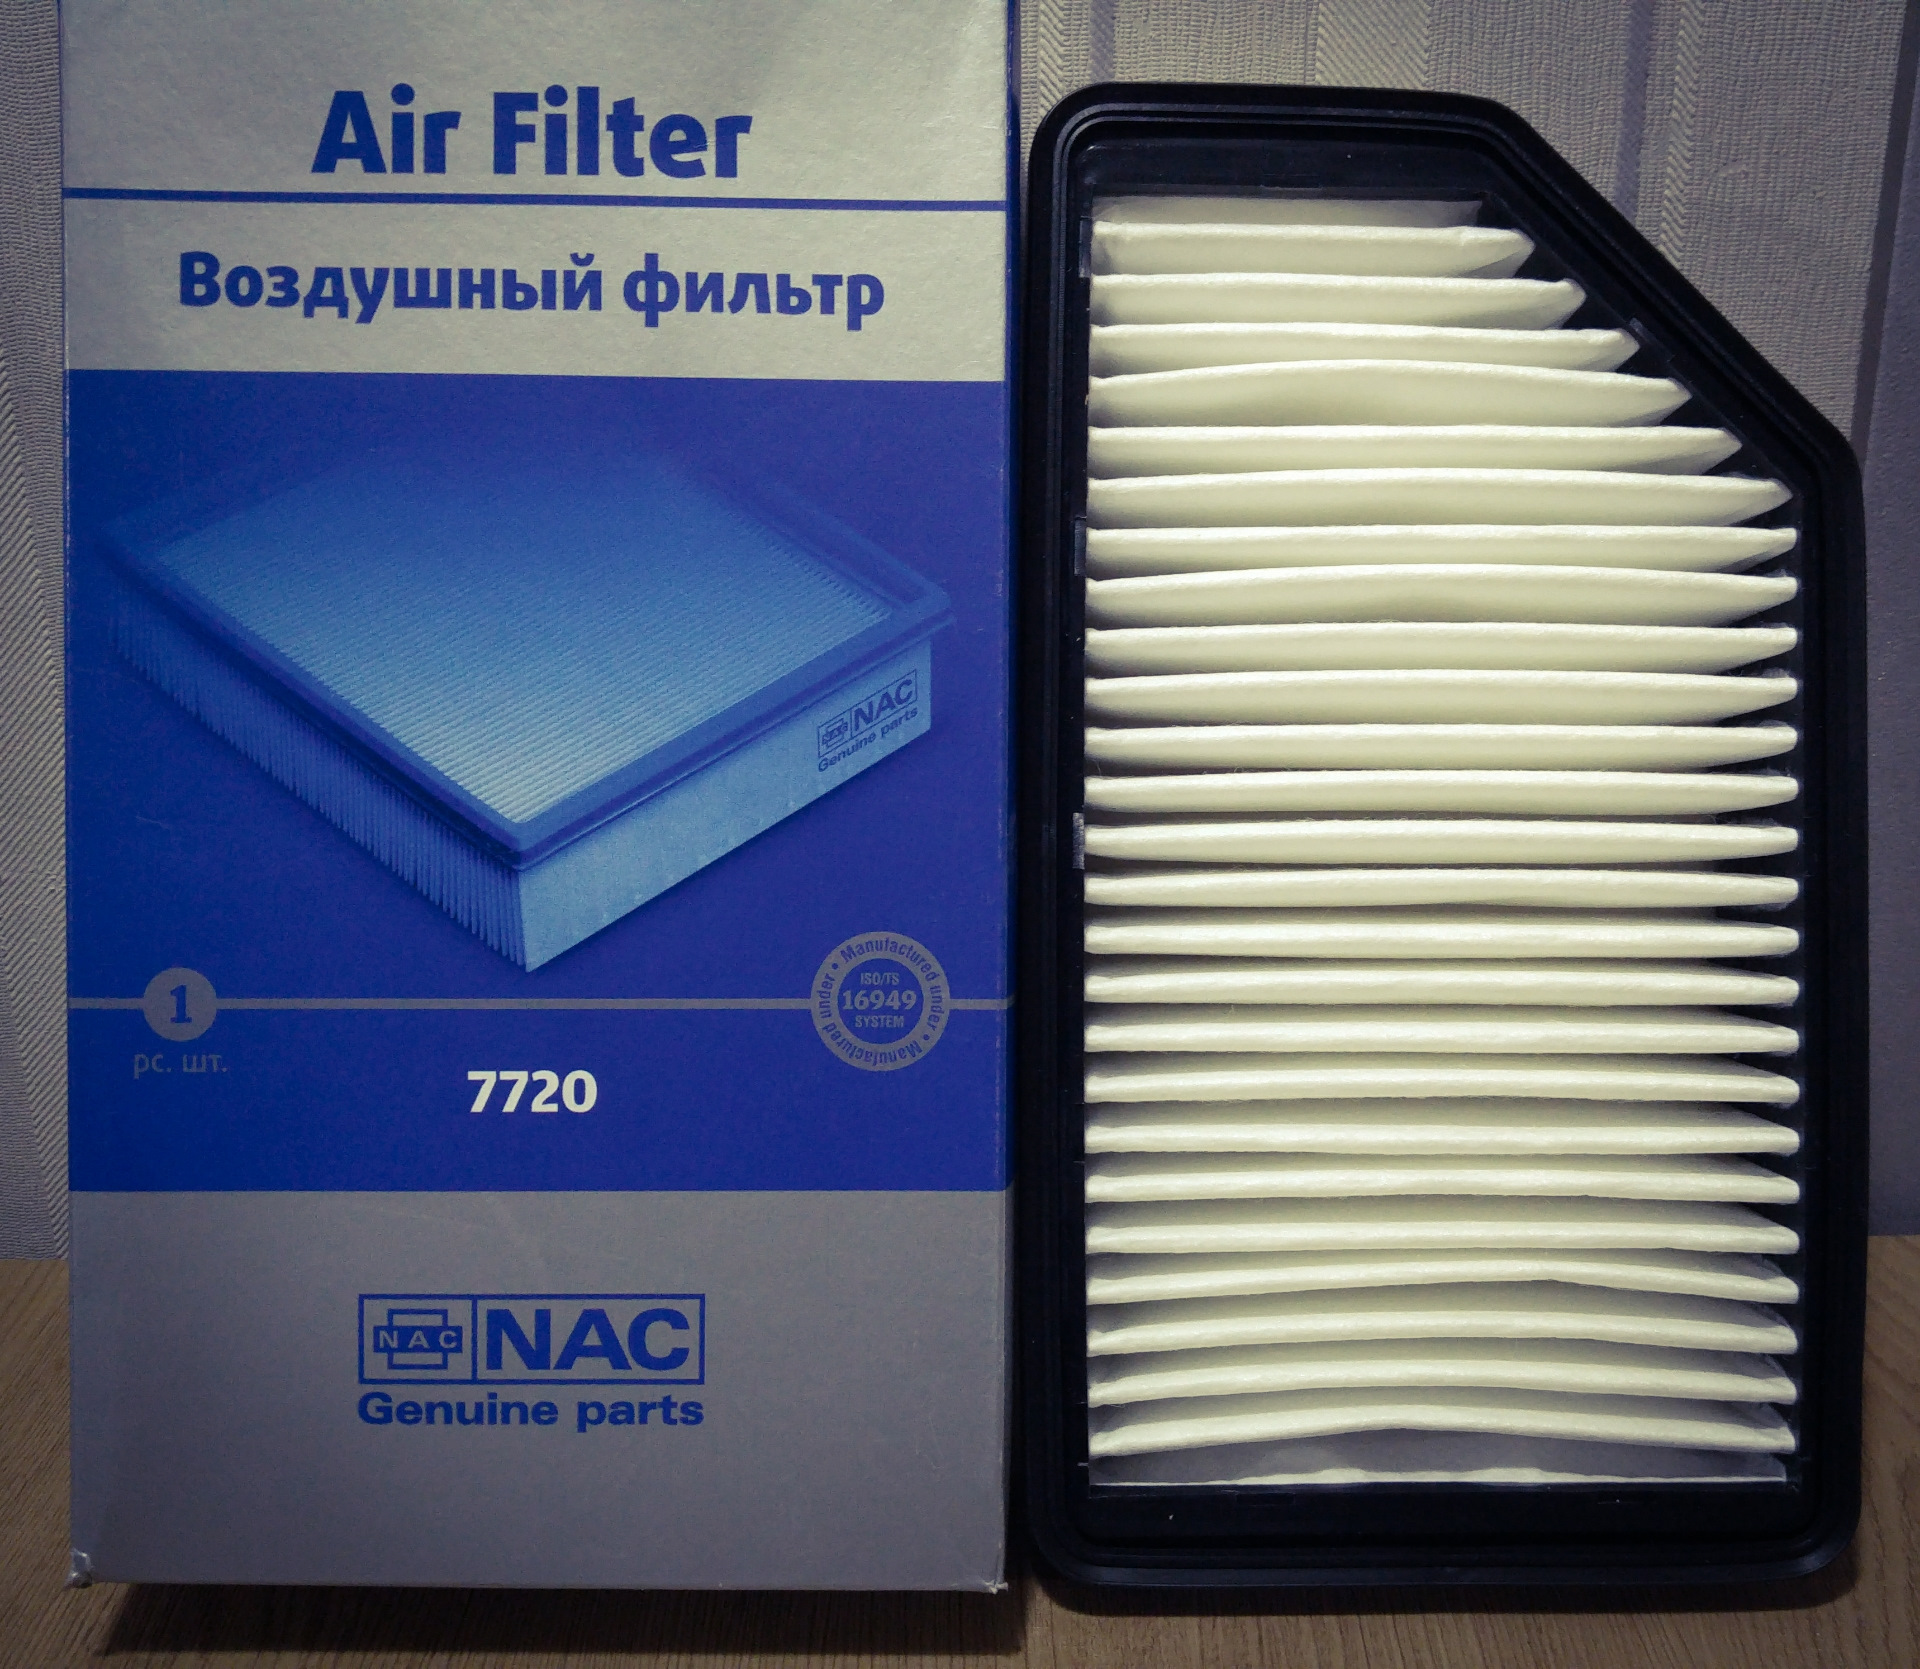 Фильтр воздушный solaris. Фильтр воздушный NAC 7720. Фильтр воздушный 7750 NAC. Фильтр воздушный Солярис 2011 1.6. Воздушный фильтр Солярис 1.6 2015.